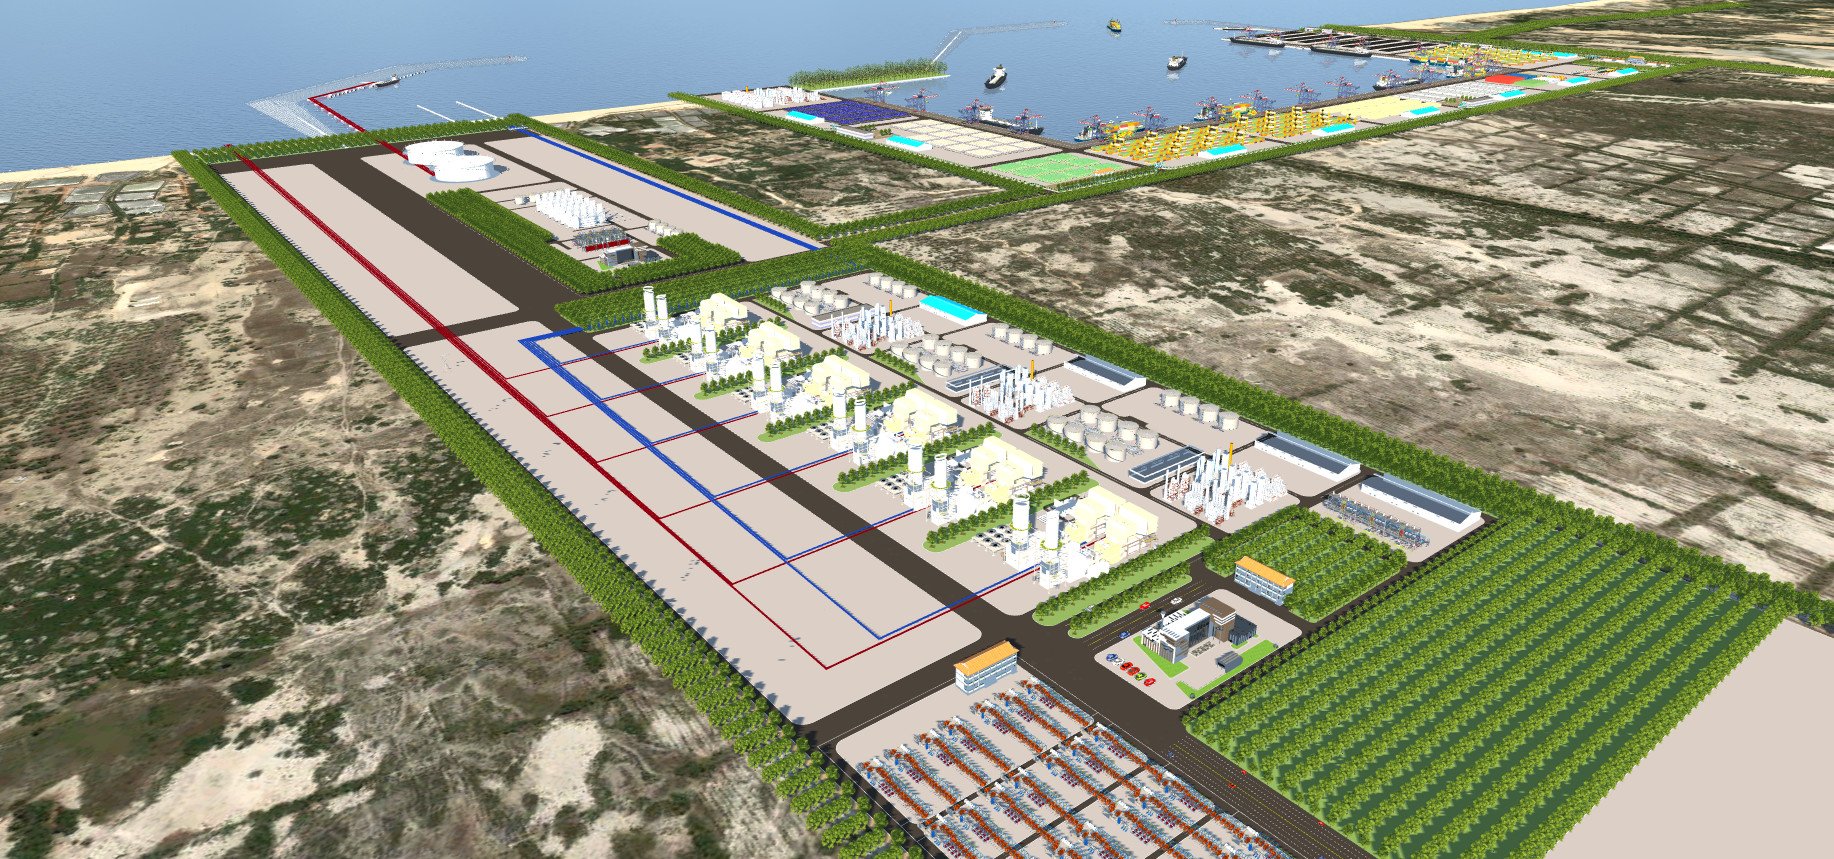 Kinh doanh - Quảng Trị trao quyết định chủ trương đầu tư dự án Trung tâm điện khí LNG Hải Lăng trị giá 2,3 tỷ USD (Hình 11).